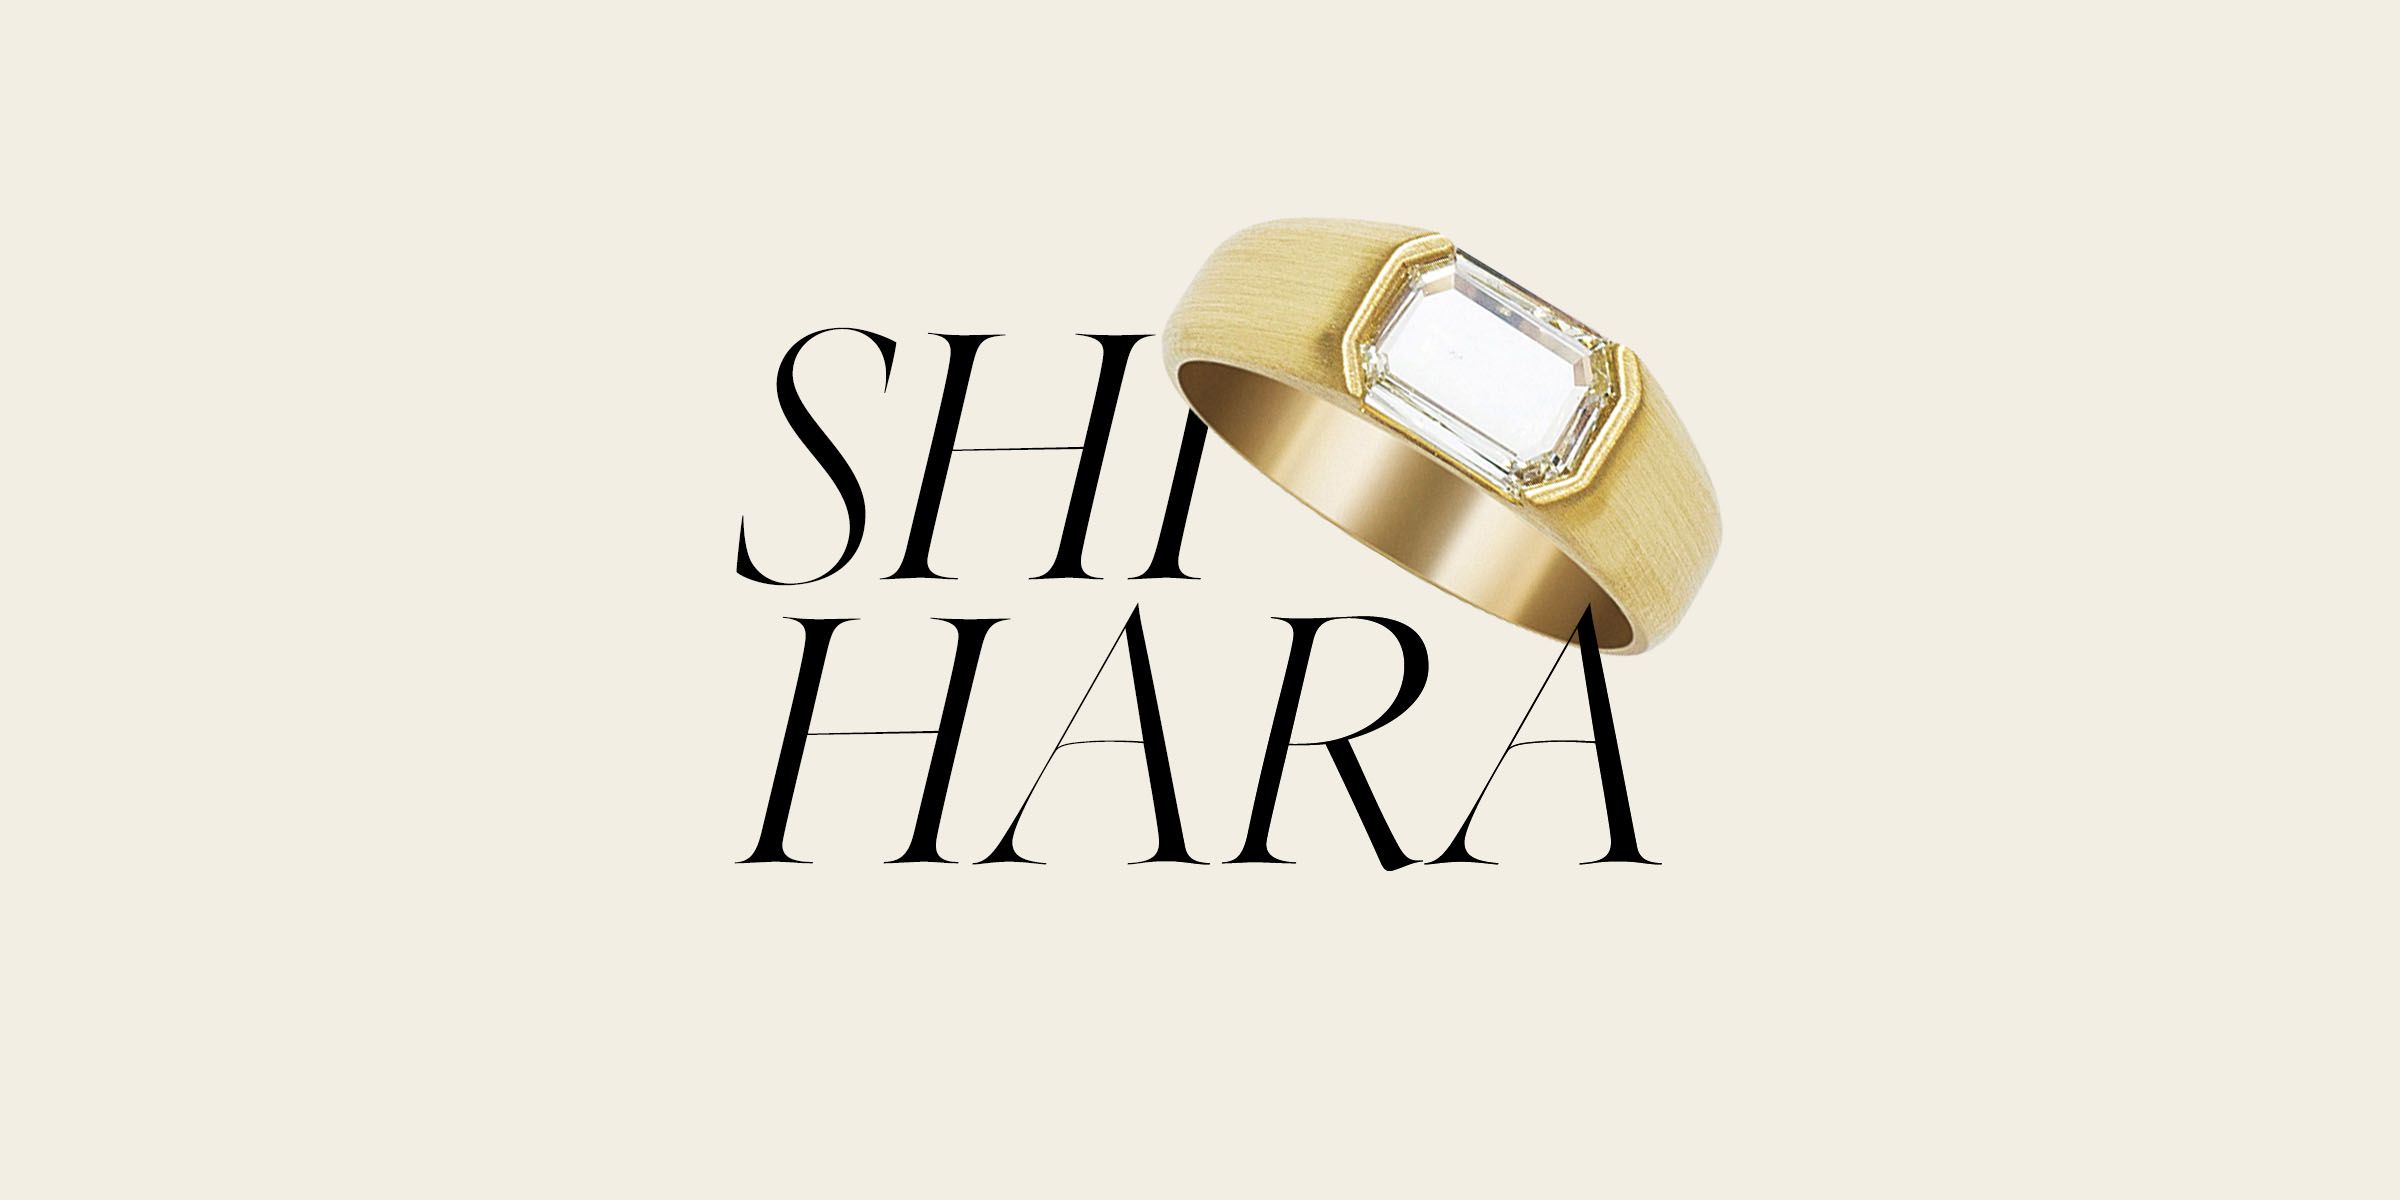 超歓迎特価shihara シハラ / プレートリング 5.0 アクセサリー